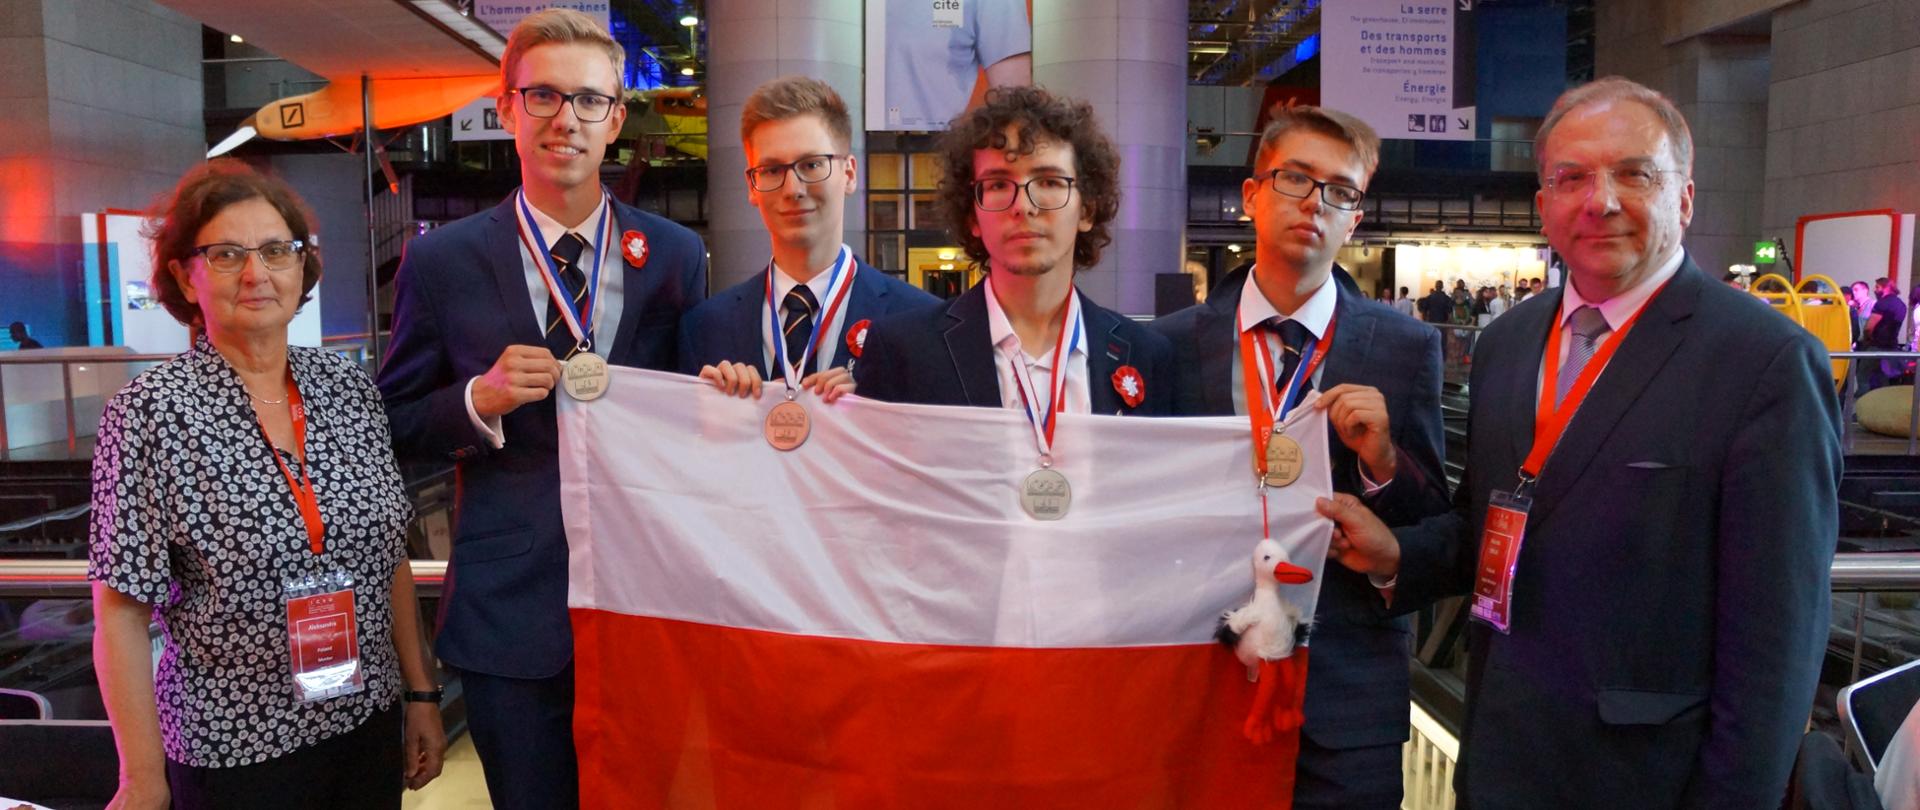 Reprezentacja Polski w Olimpiadzie Chemicznej w Paryżu stoją trzymając flagę Polski